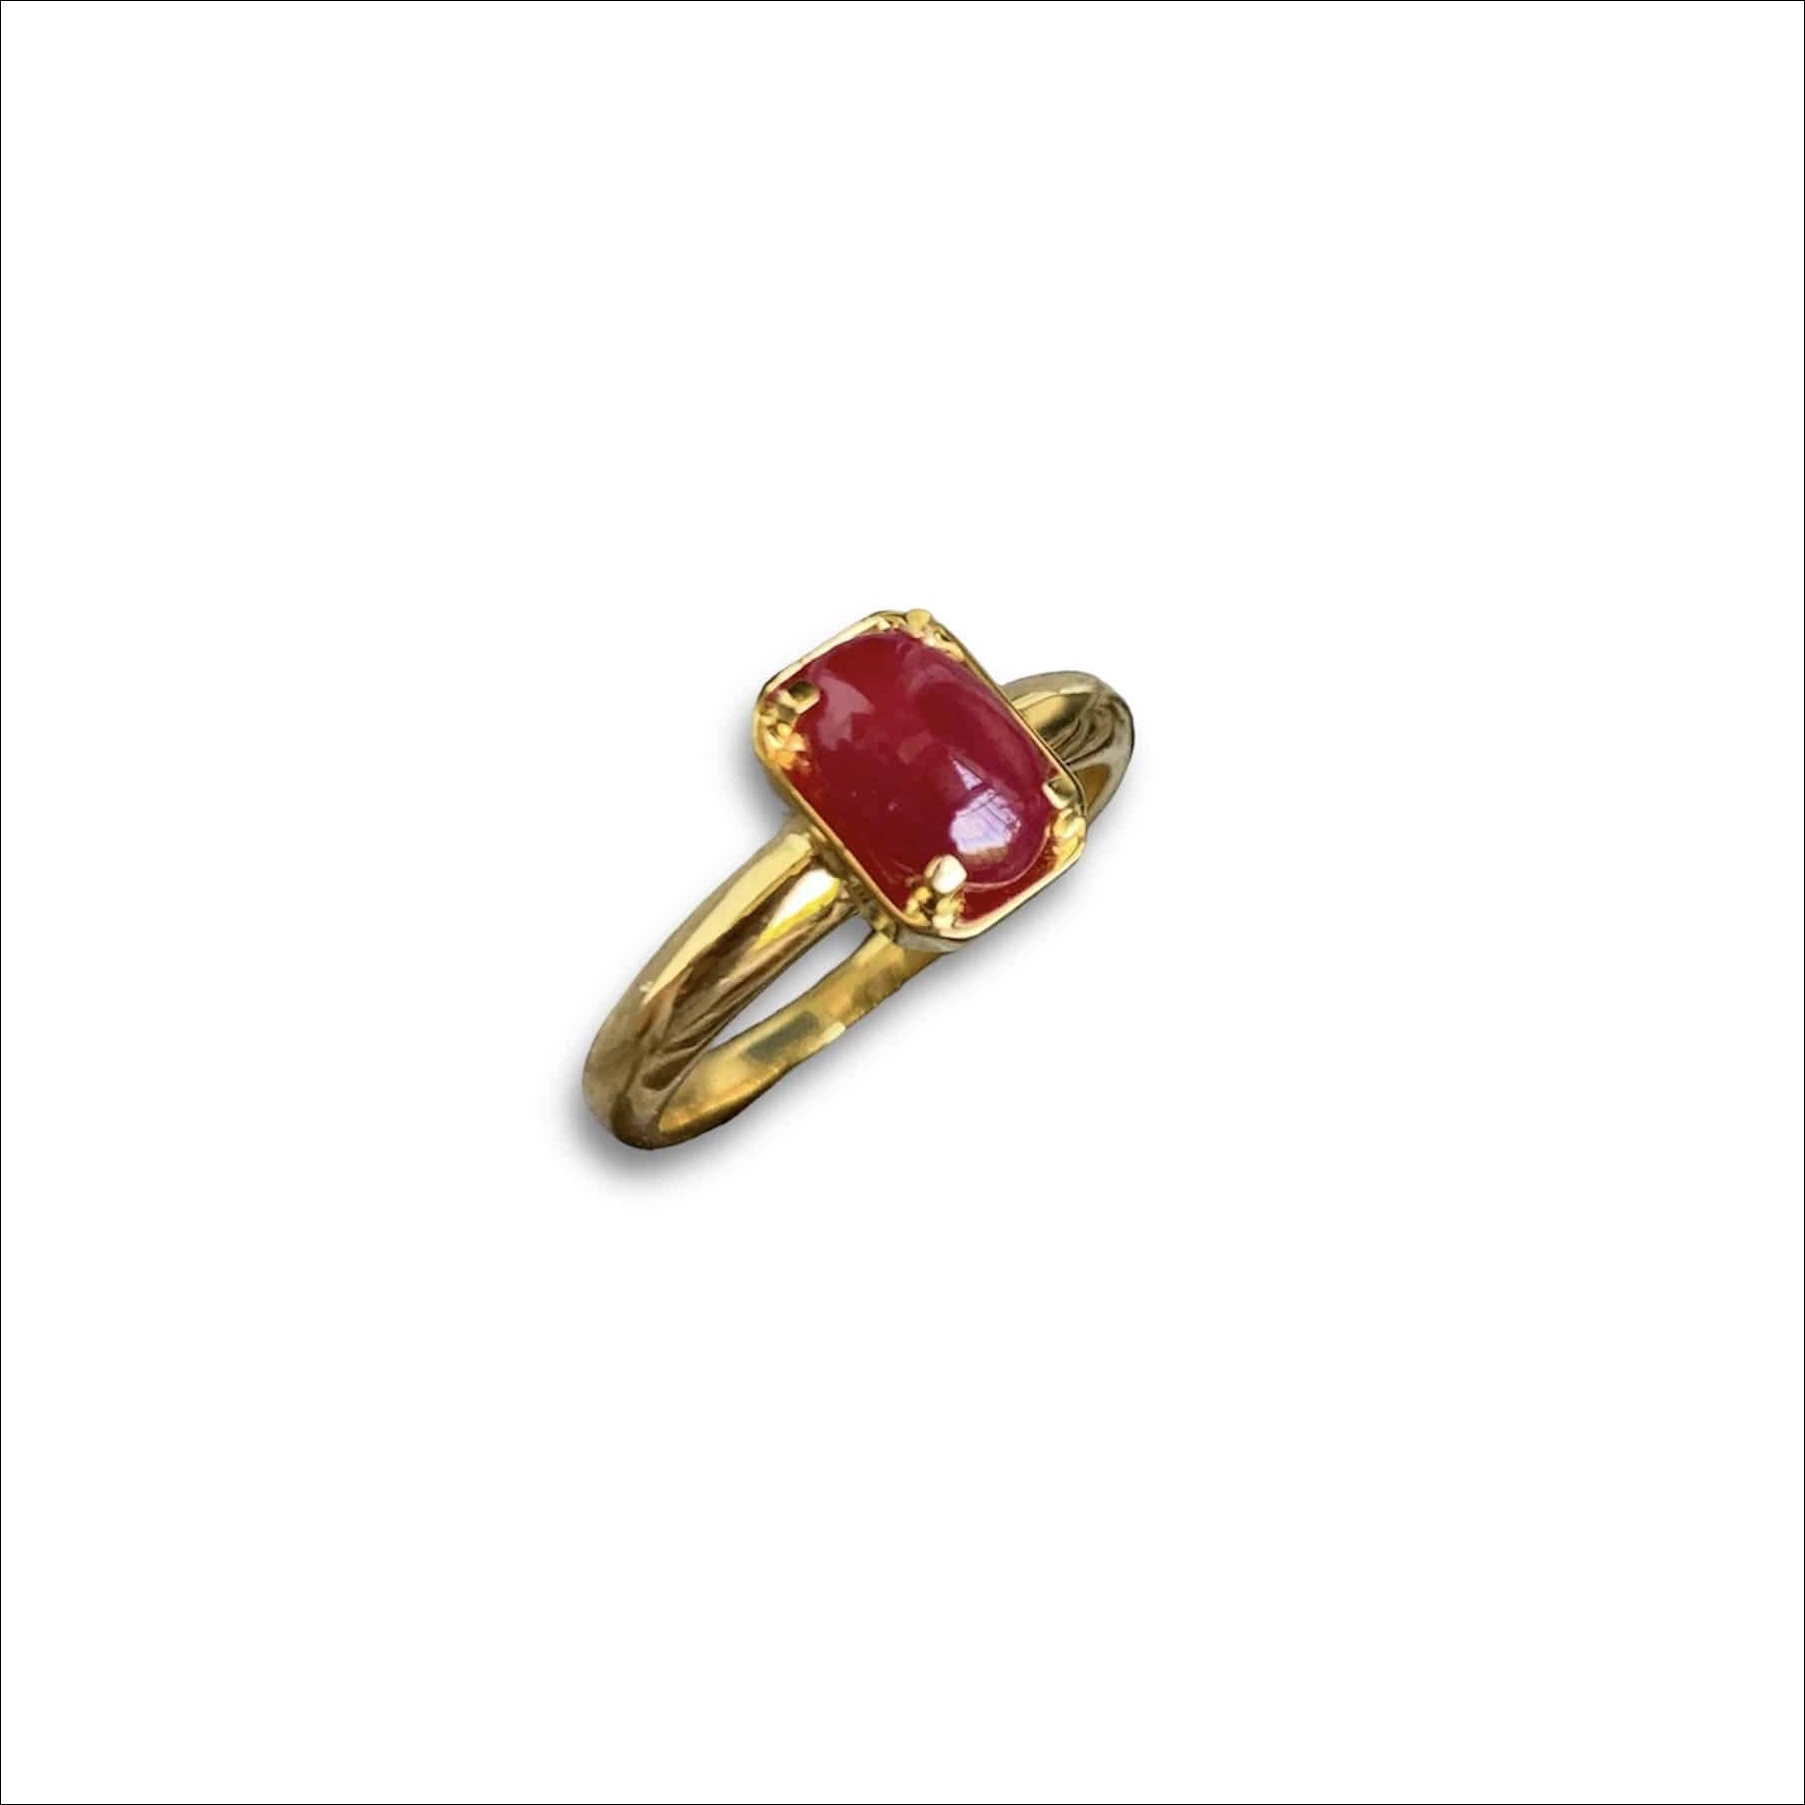 Nhẫn nữ Ruby huyết kính Vintage 3,85ct - IRRB 235385